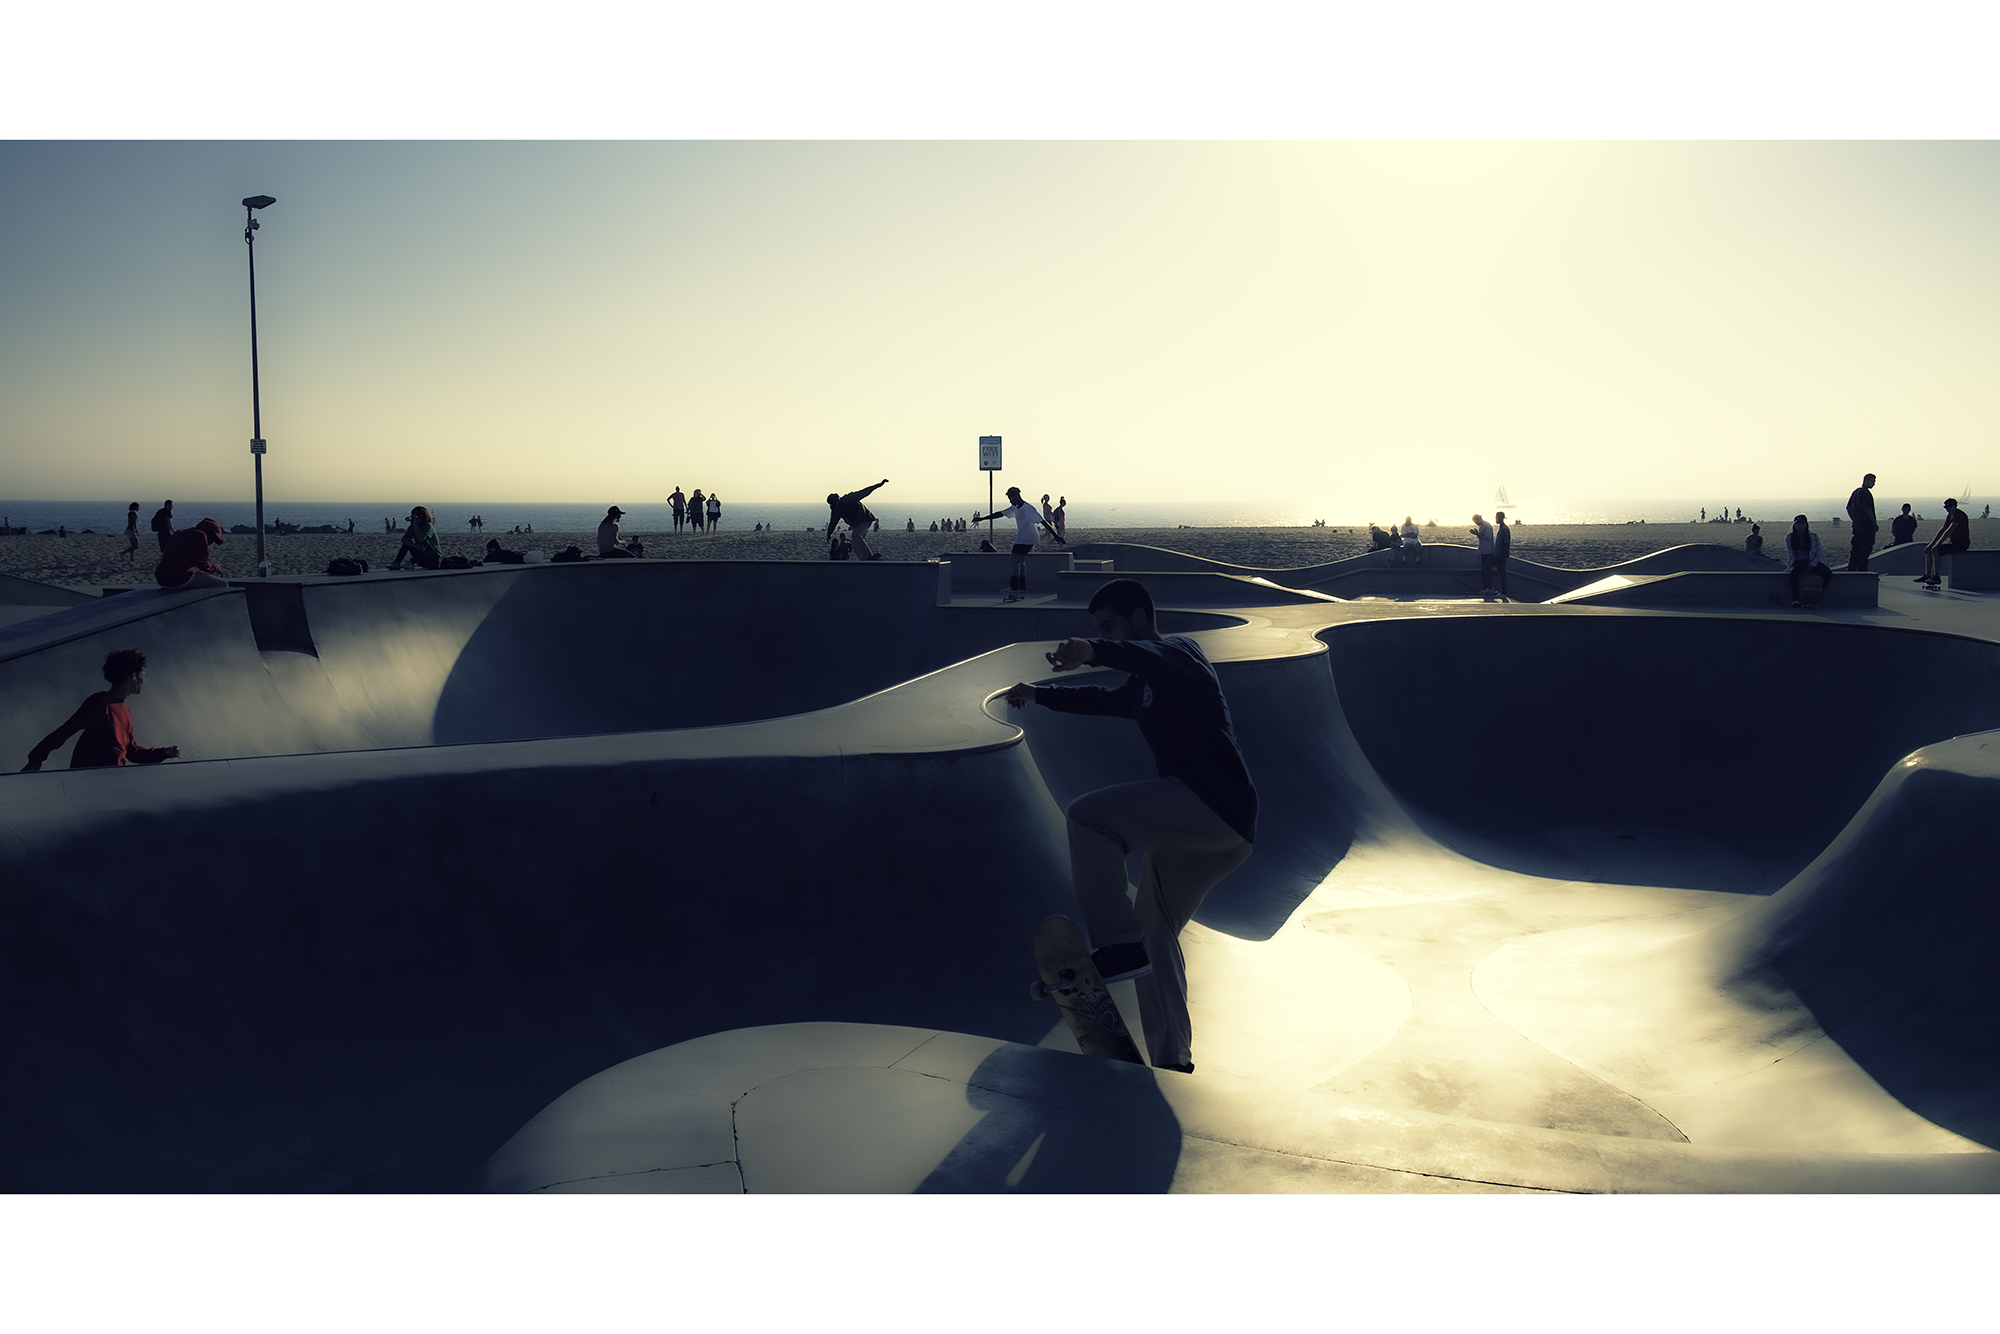 'Skate Park II' ⎢ Venice Beach Los Angeles